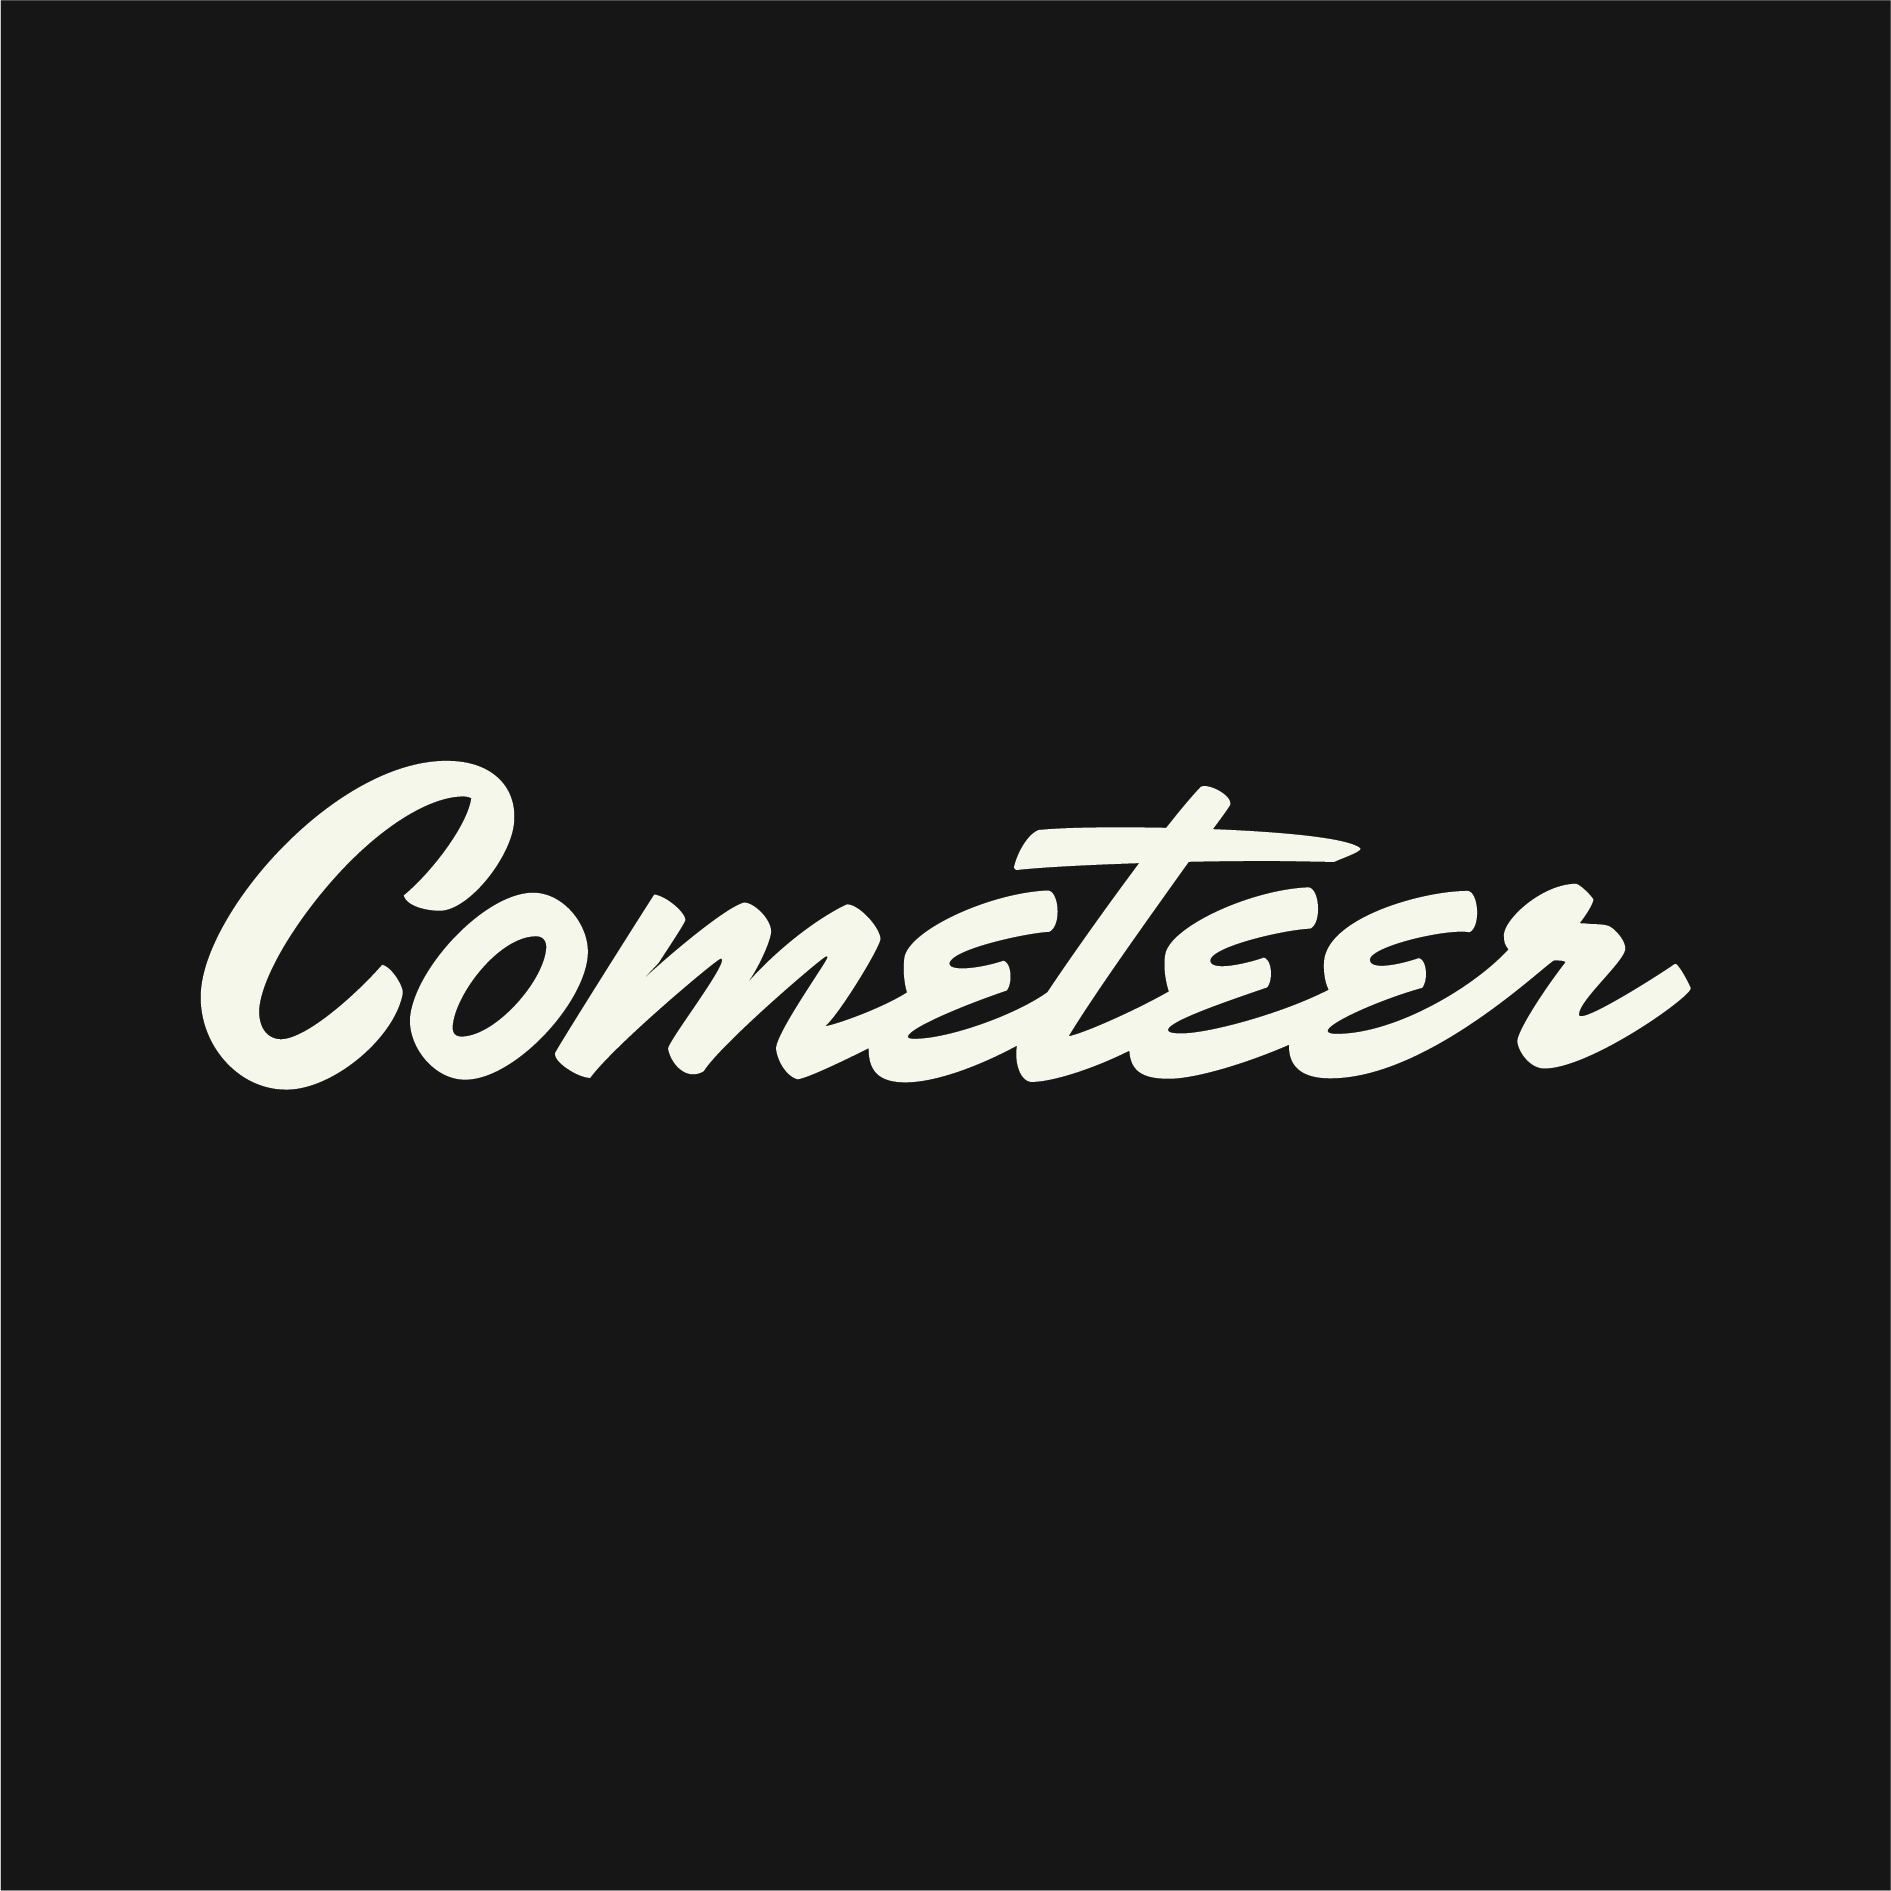 Cometeer, Inc.